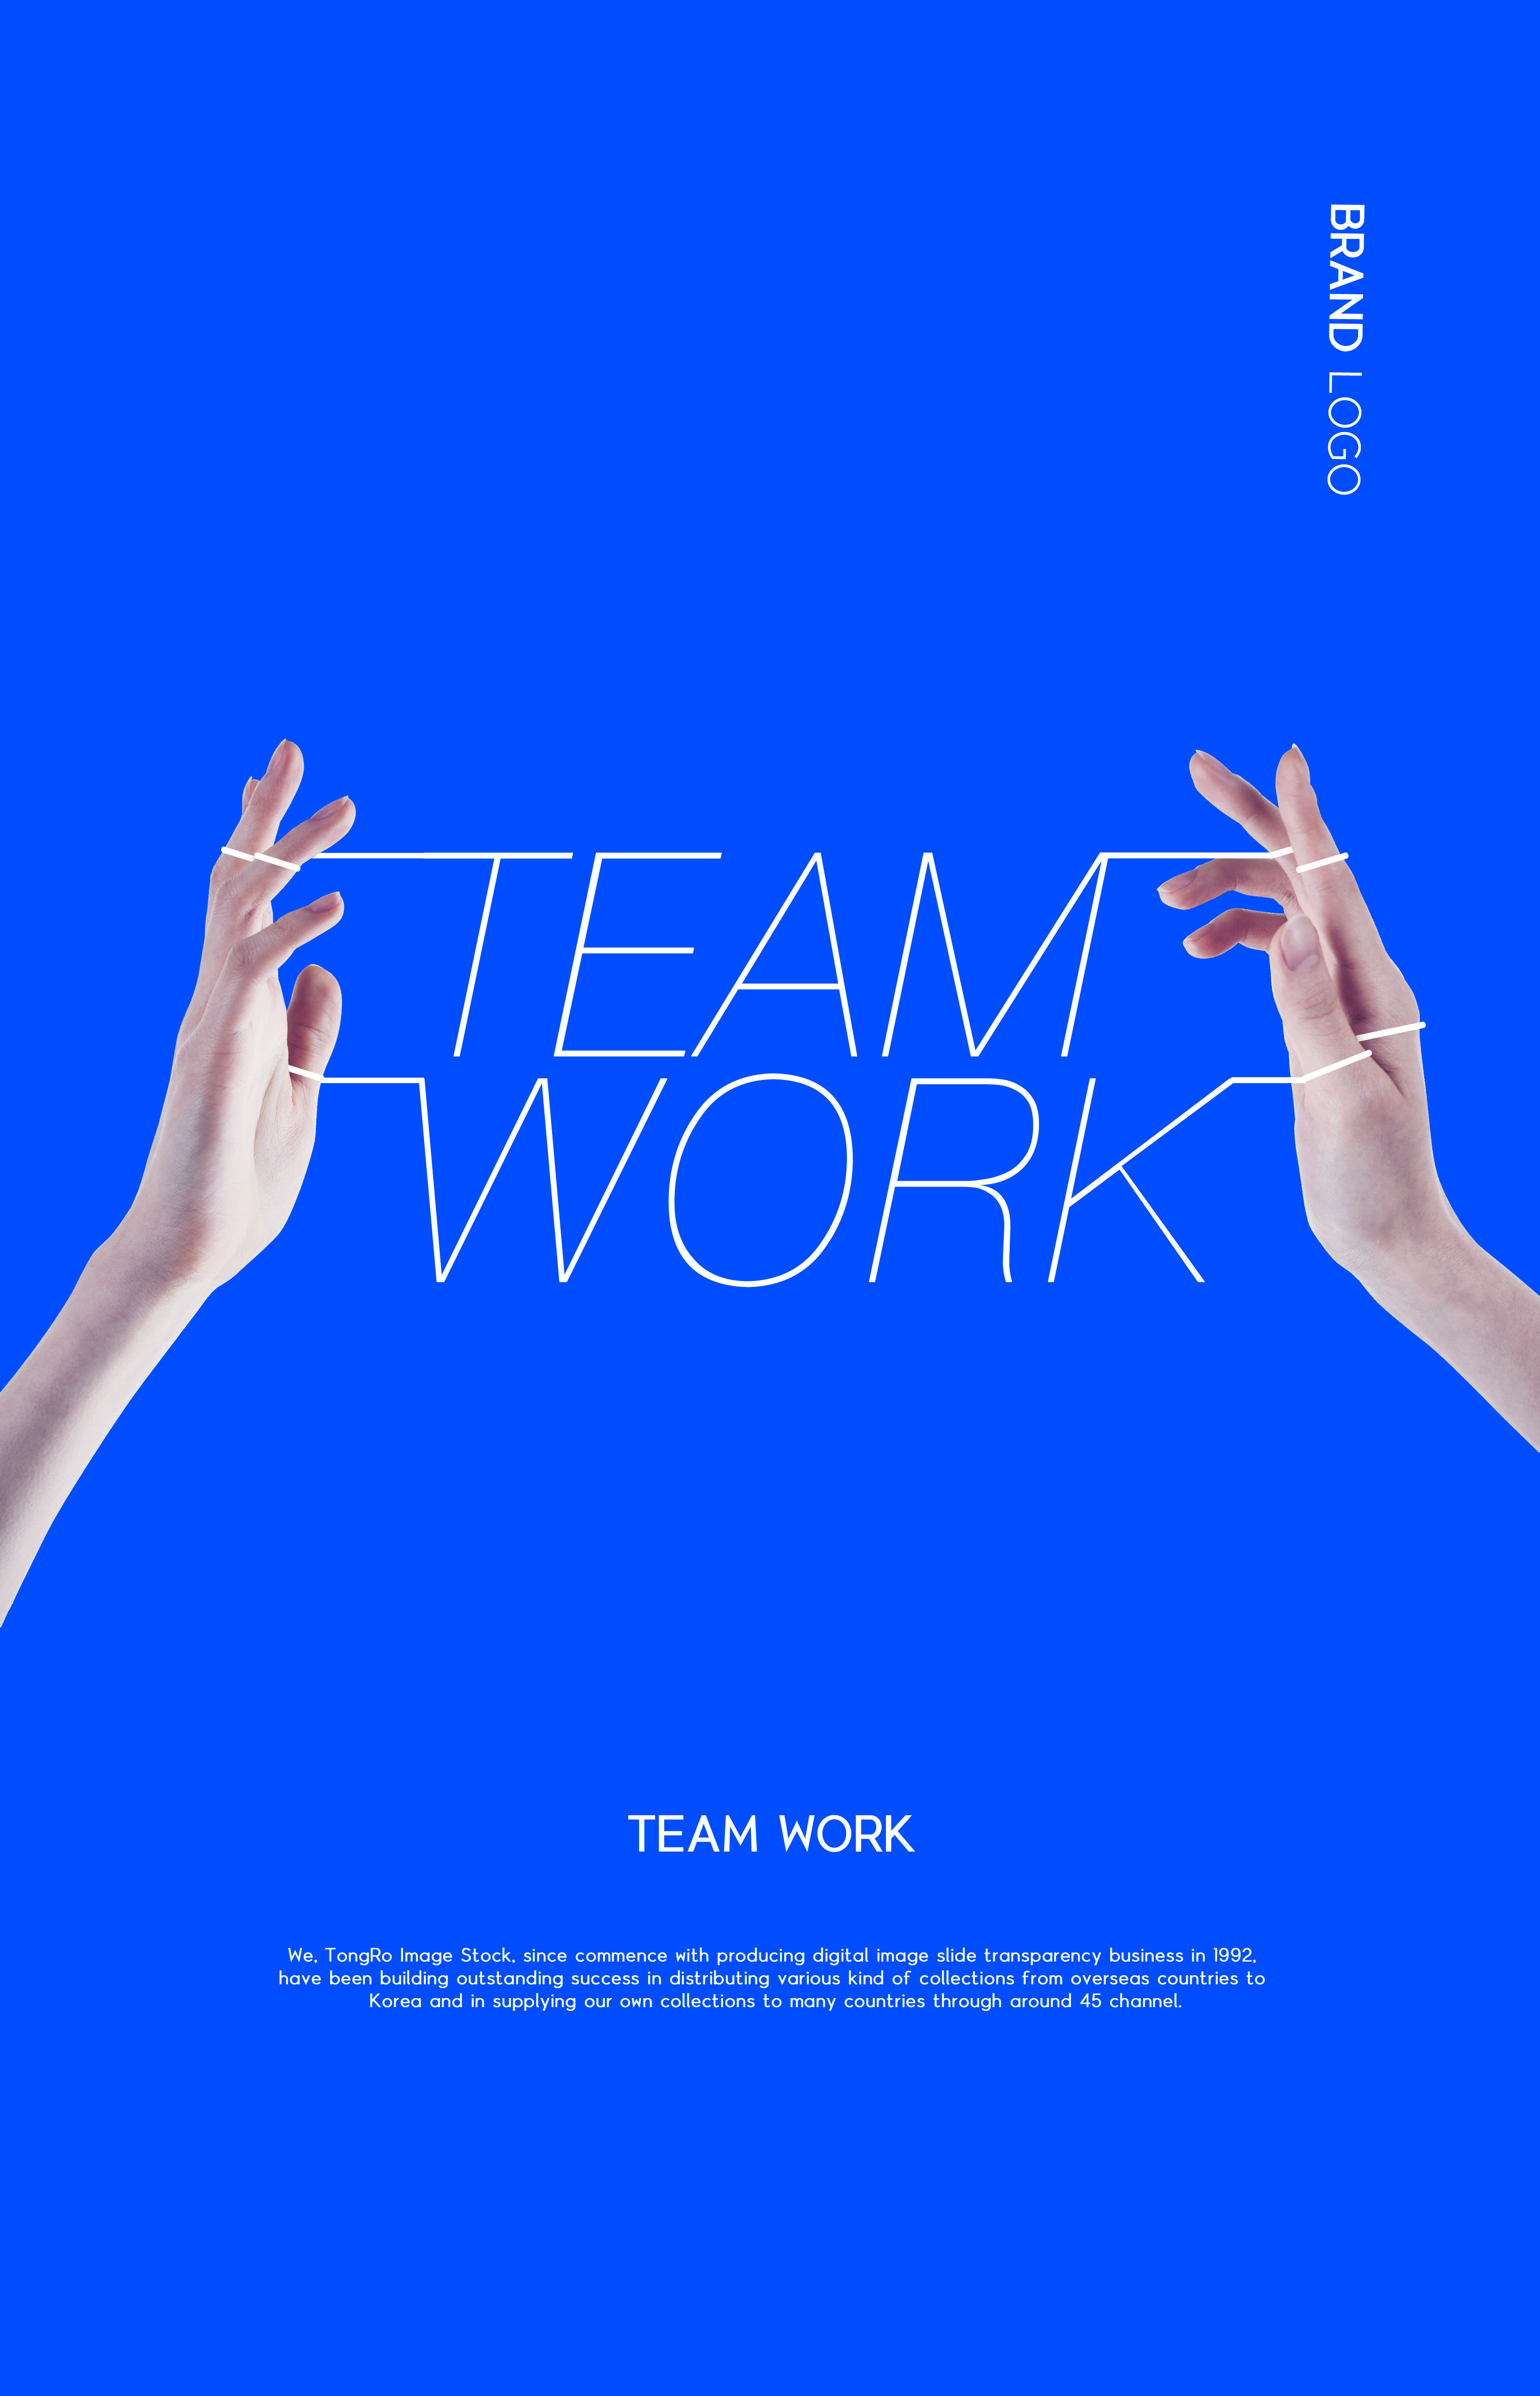 蓝&橙纯色系简约风格团队合作主题海报设计套装[PSD]插图(5)